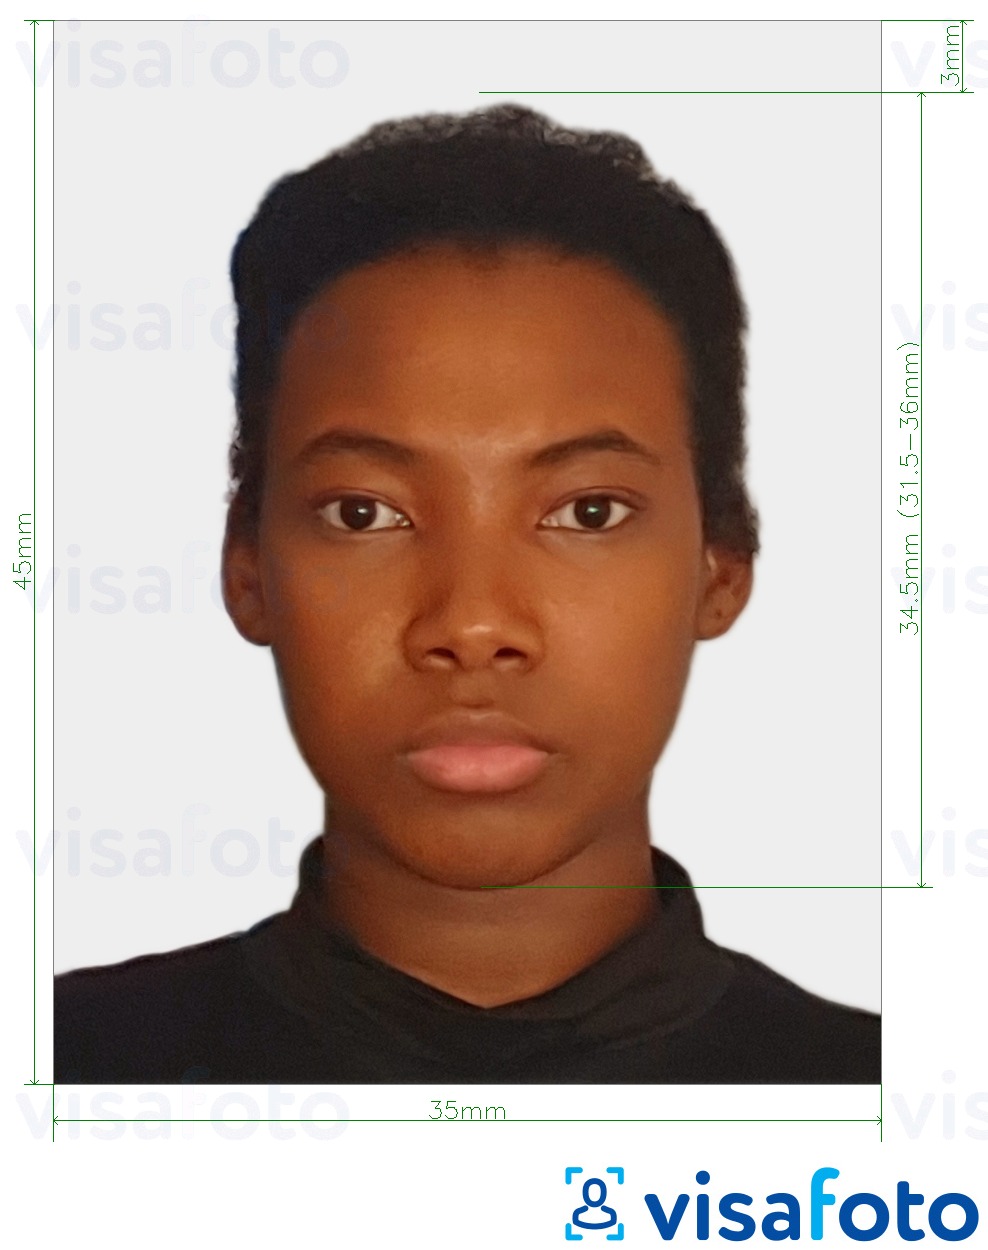 Esimerkkikuva Sambia visa photo 35x45 mm (3,5x4,5 cm), joka täyttää tarkat kokovaatimukset